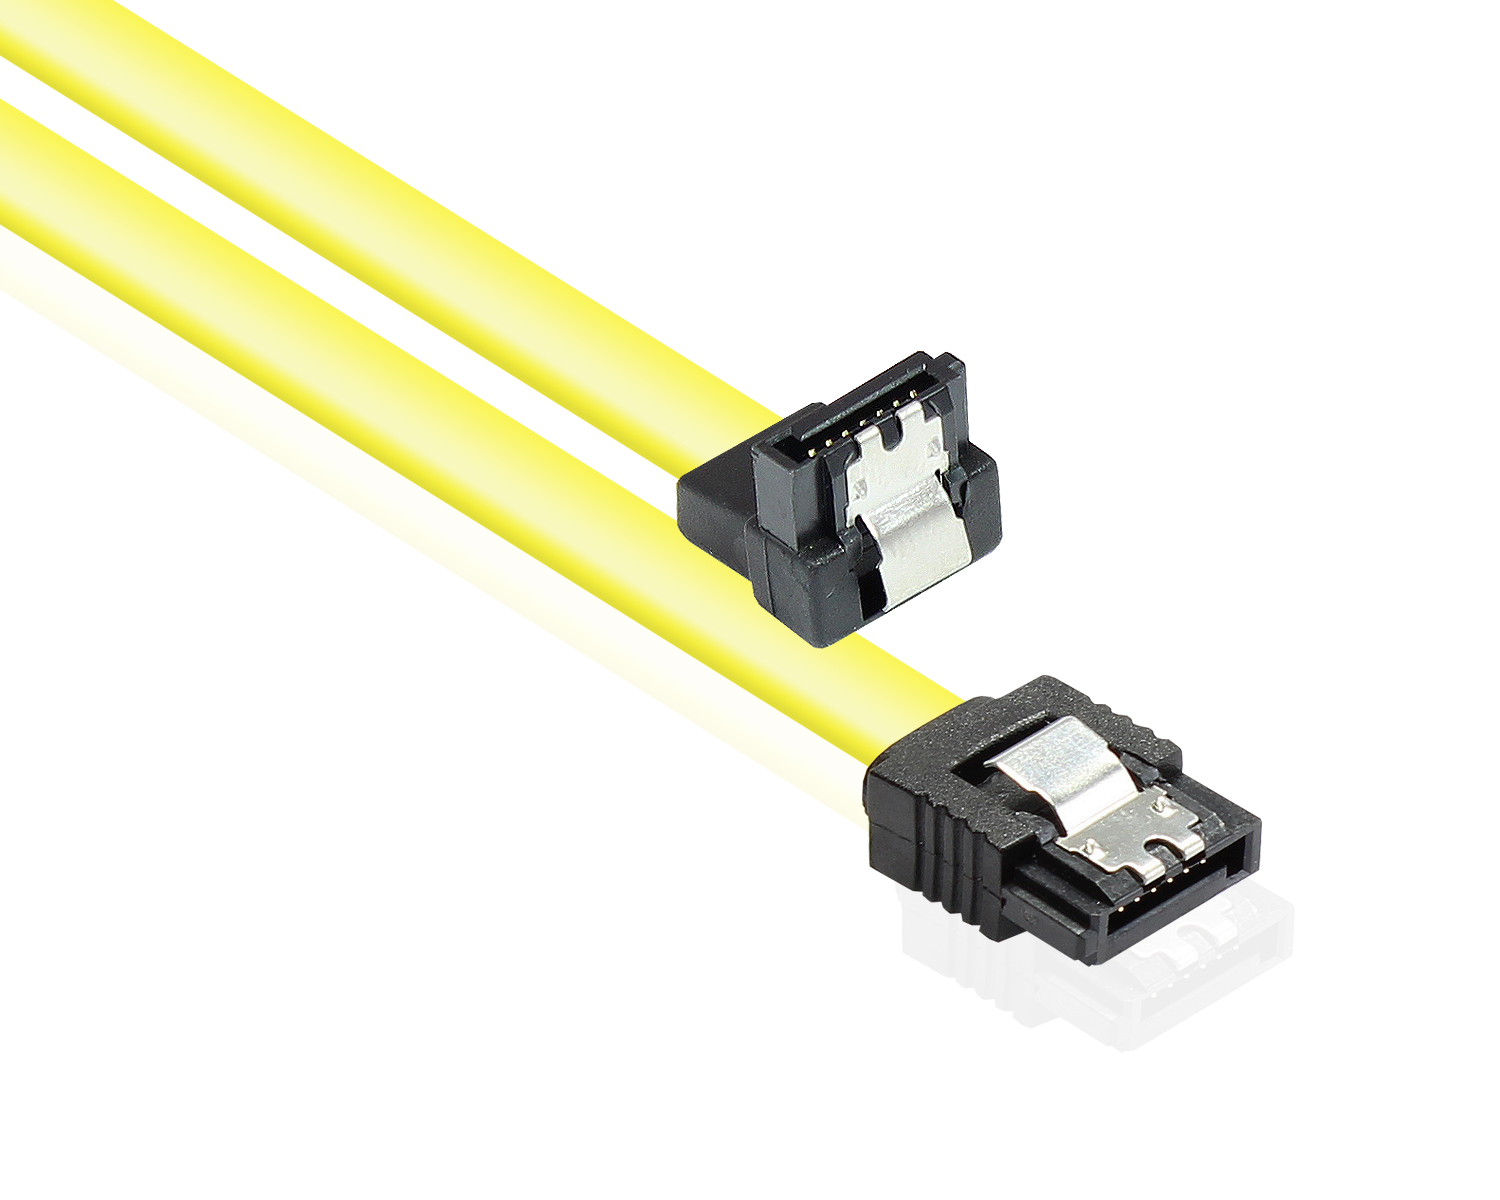 Anschlusskabel SATA 6 Gb/s mit Metallclip, einseitig gewinkelt, gelb, 0,5m